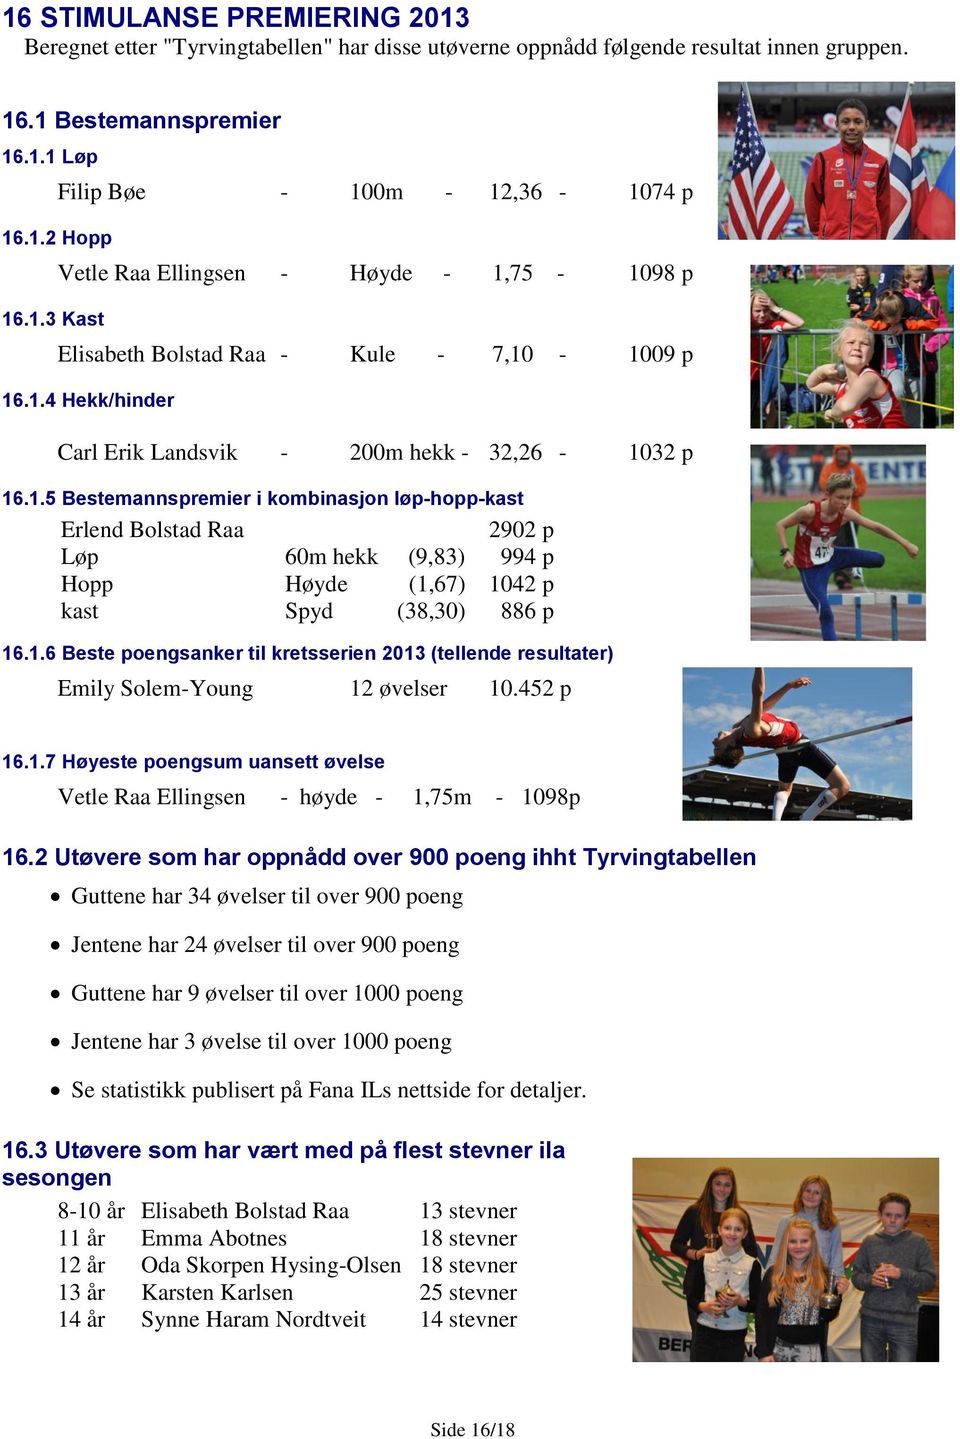 1.6 Beste poengsanker til kretsserien 2013 (tellende resultater) Emily Solem-Young 12 øvelser 10.452 p 16.1.7 Høyeste poengsum uansett øvelse Vetle Raa Ellingsen - høyde - 1,75m - 1098p 16.